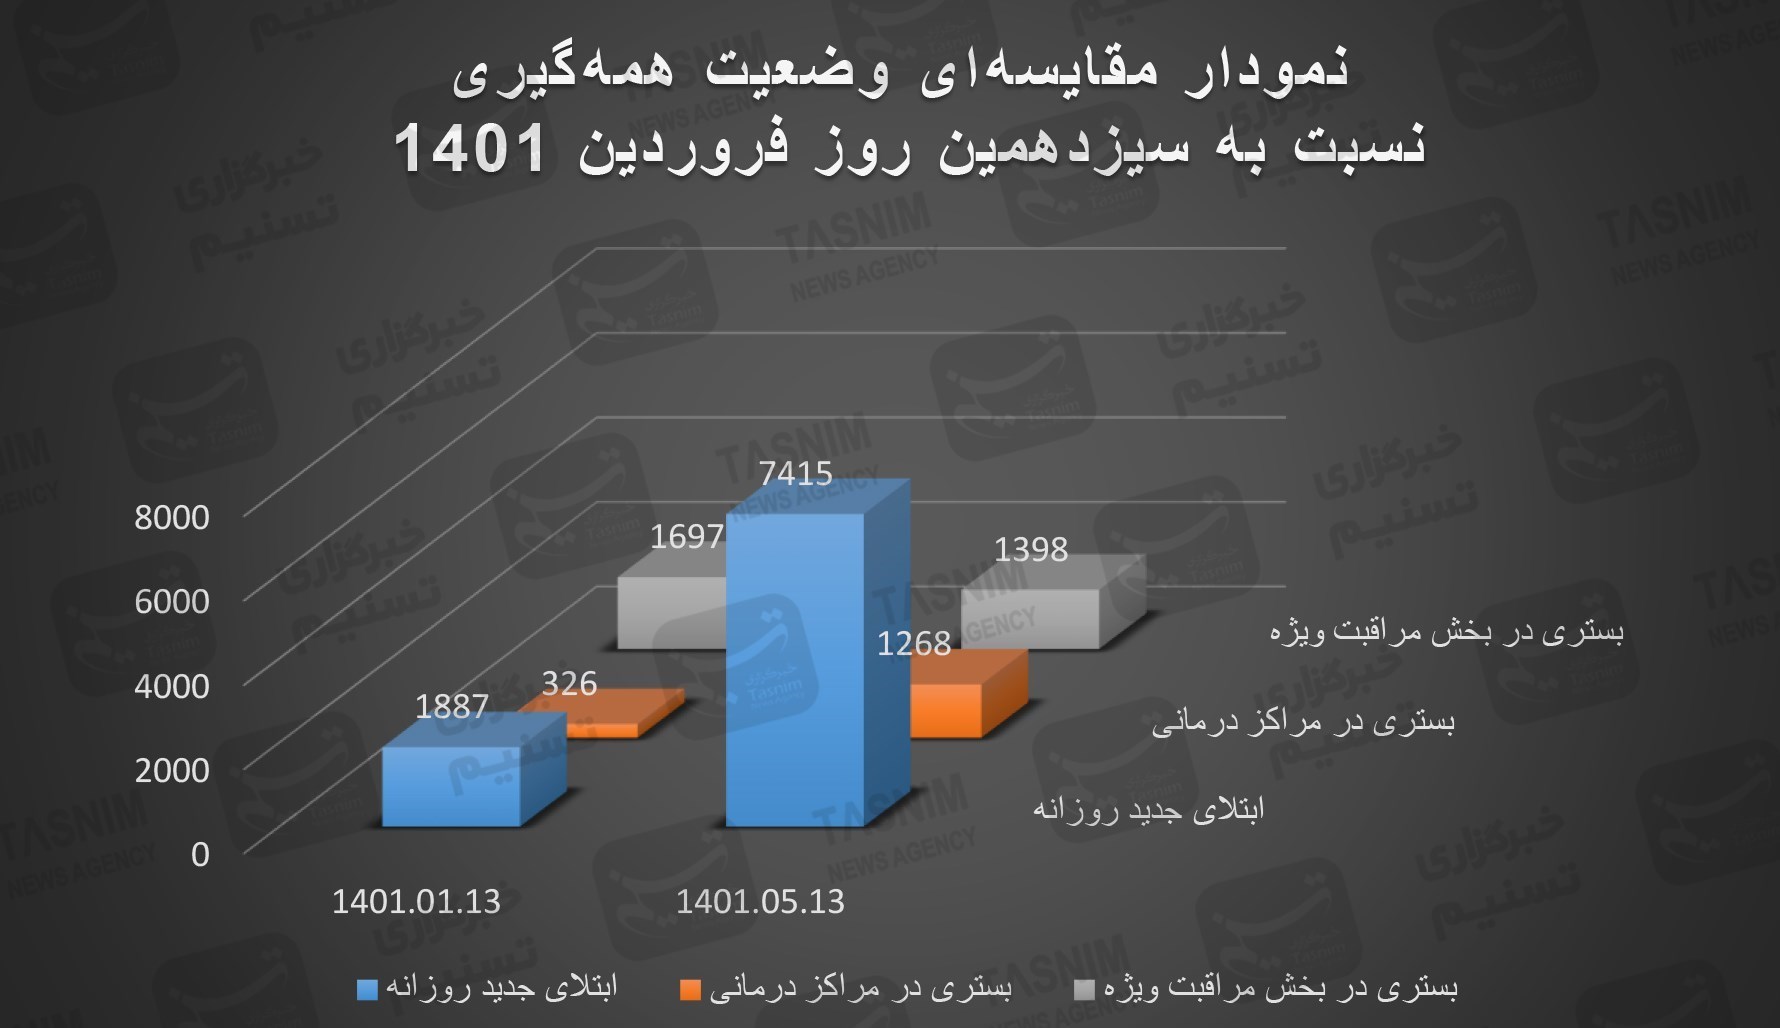 آخرین اخبار کرونا در ایران| رشد ۲۹۲.۹۵درصدی نرخ ابتلا از ۱۳ فروردین در پیک هفتم/ کودکان ناقلان شیرین‌زبان+ نقشه و نمودار